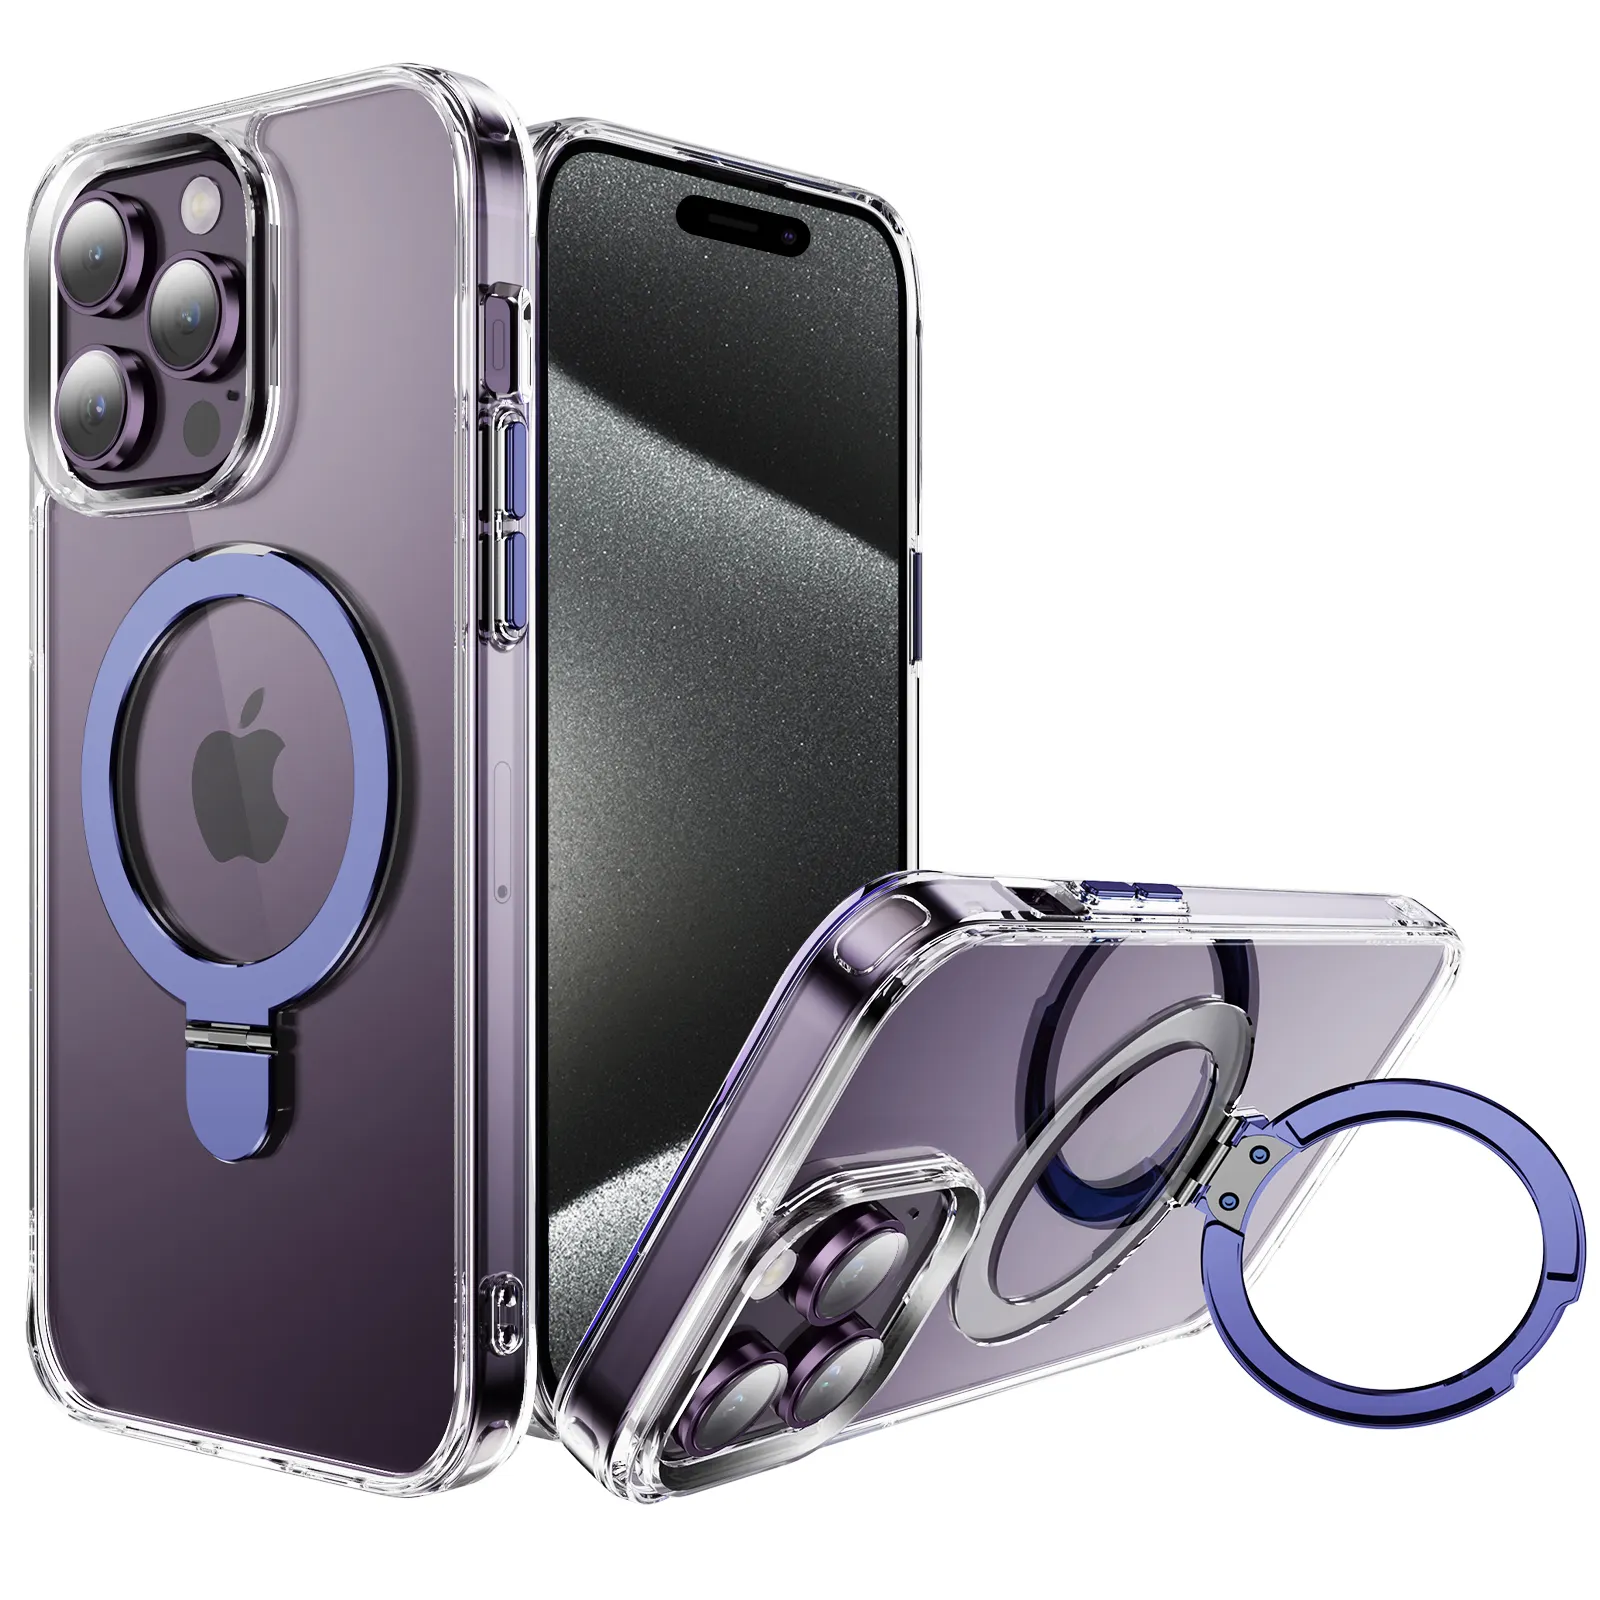 Casing iPhone 15 Pro Max, sarung HP cincin magnetik bisa diputar 360 derajat cocok dengan Magnet dan pemegang cincin anti syok